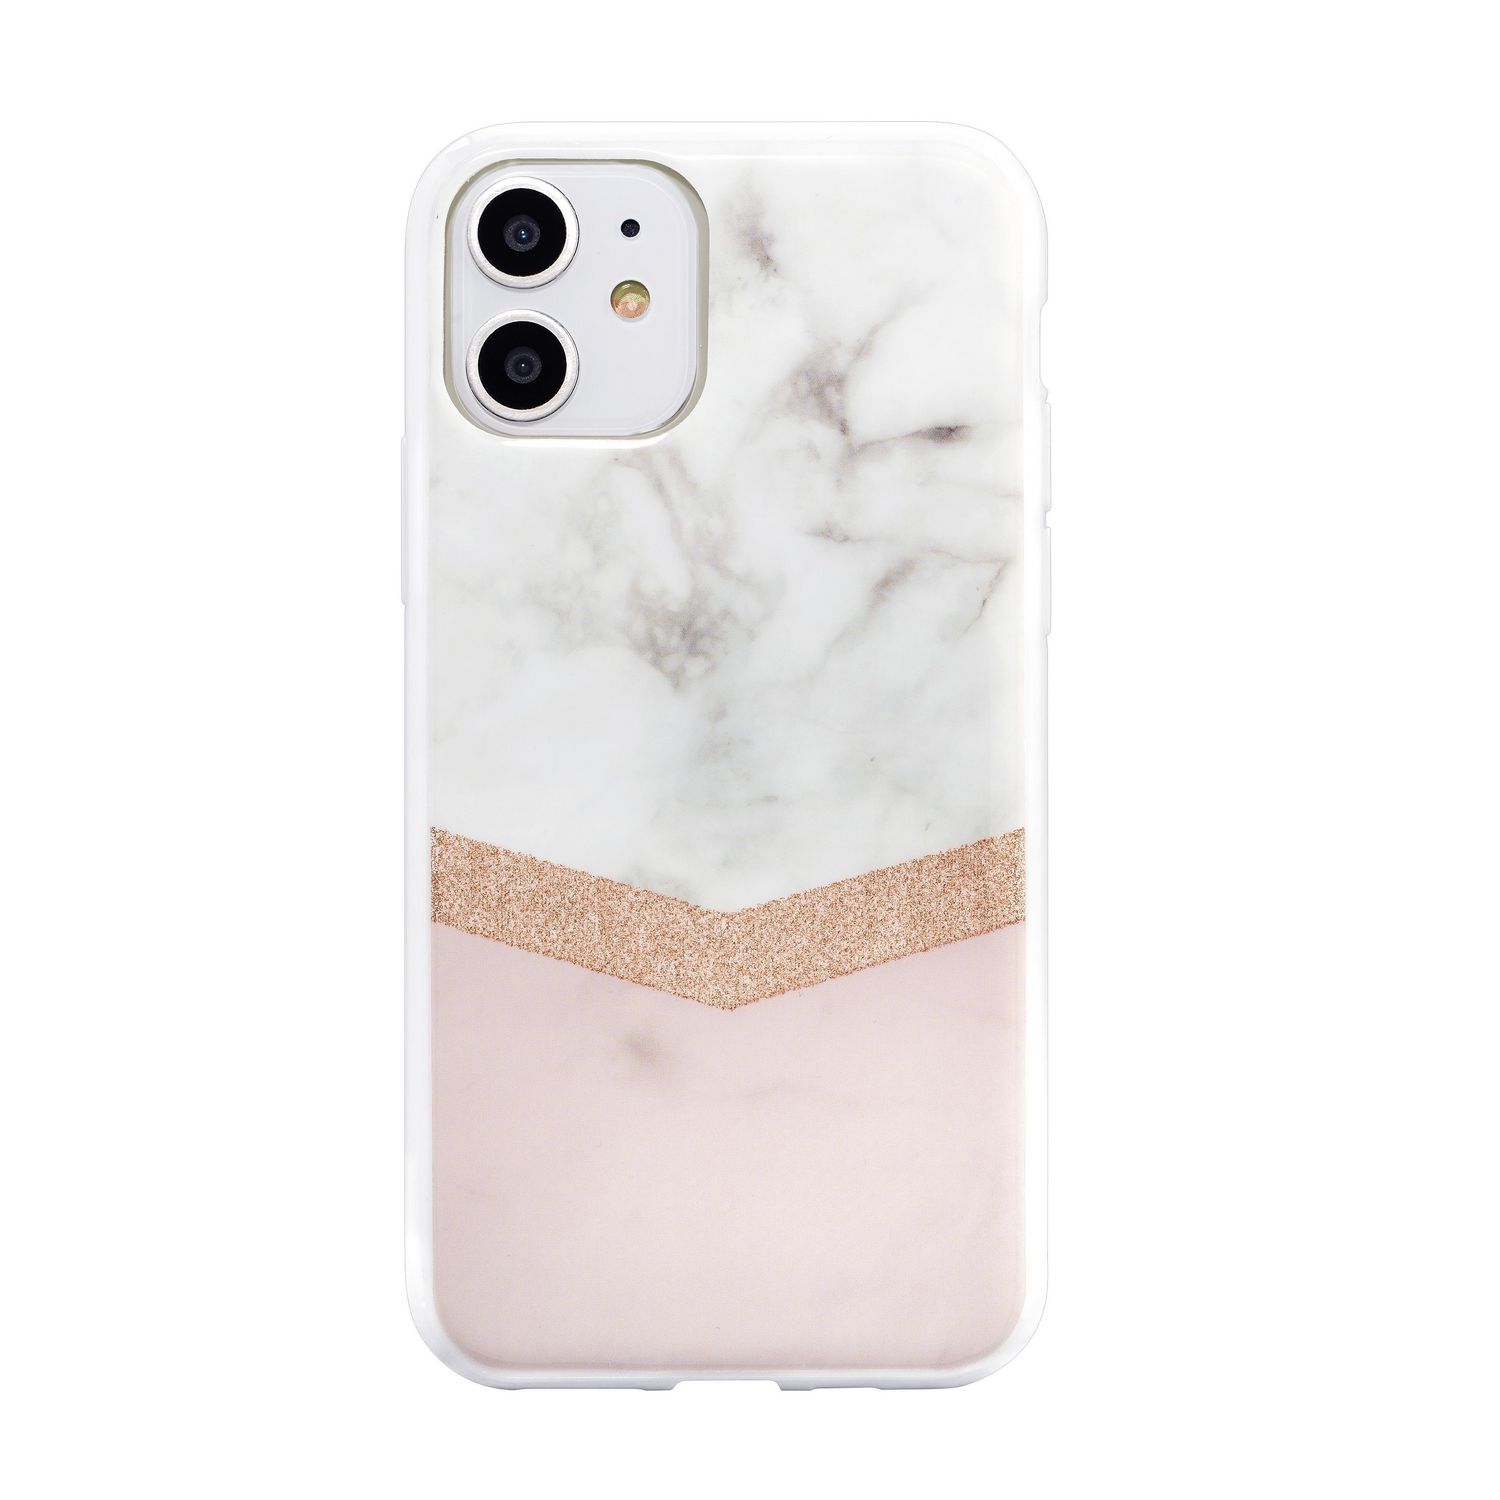 Habitu Sierra Rose Gold Glitter for iPhone XR/11 | Walmart Canada